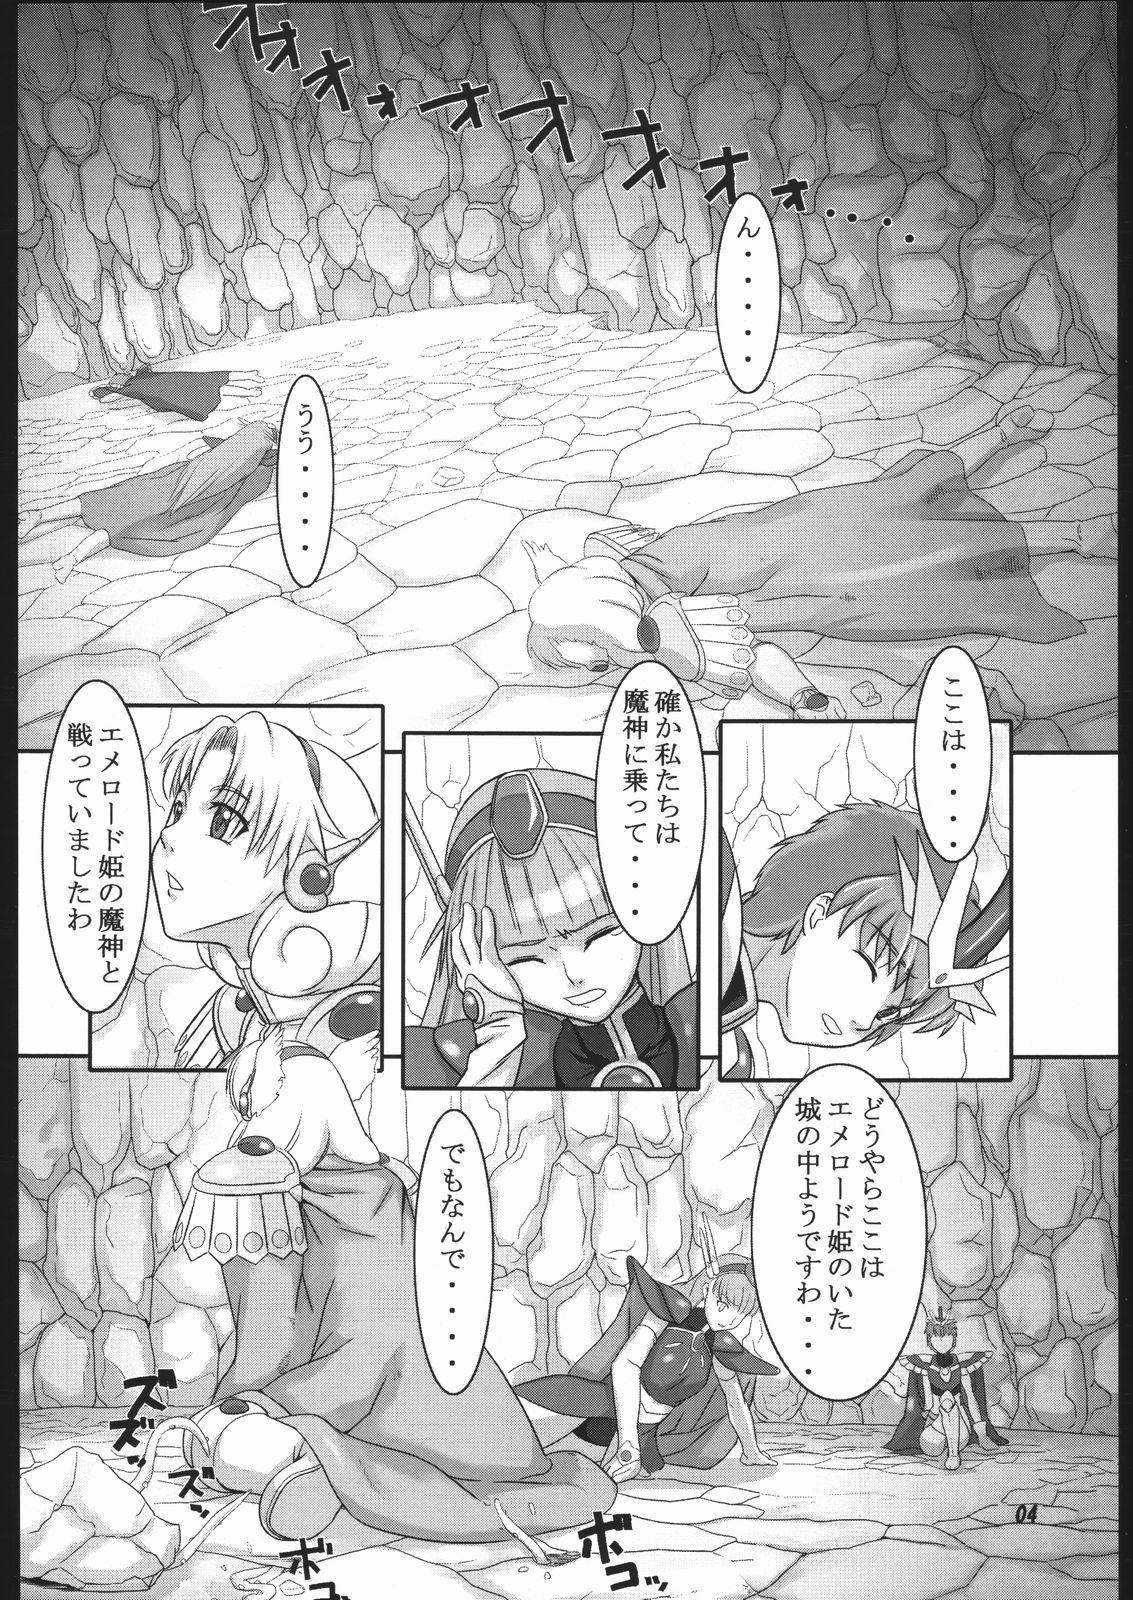 Shorts Mahou no Ori - Magic knight rayearth Nylons - Page 3